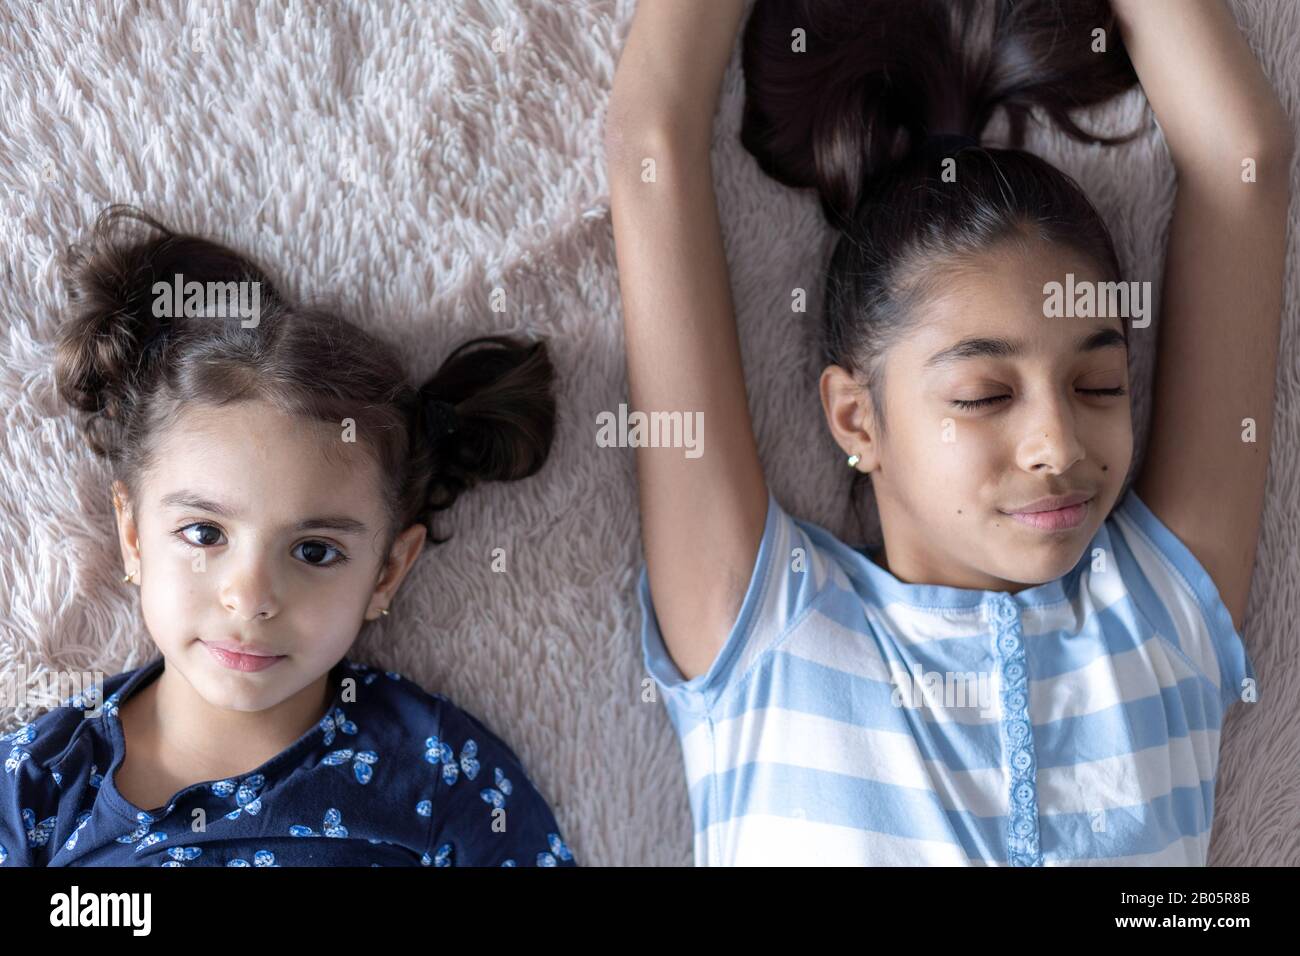 Deux jeunes filles noires, sœurs, se trouvent au lit dans une embrasse sur le dos. Des filles persanes sur le lit avec un téléphone. Enfants du Moyen-Orient. Banque D'Images